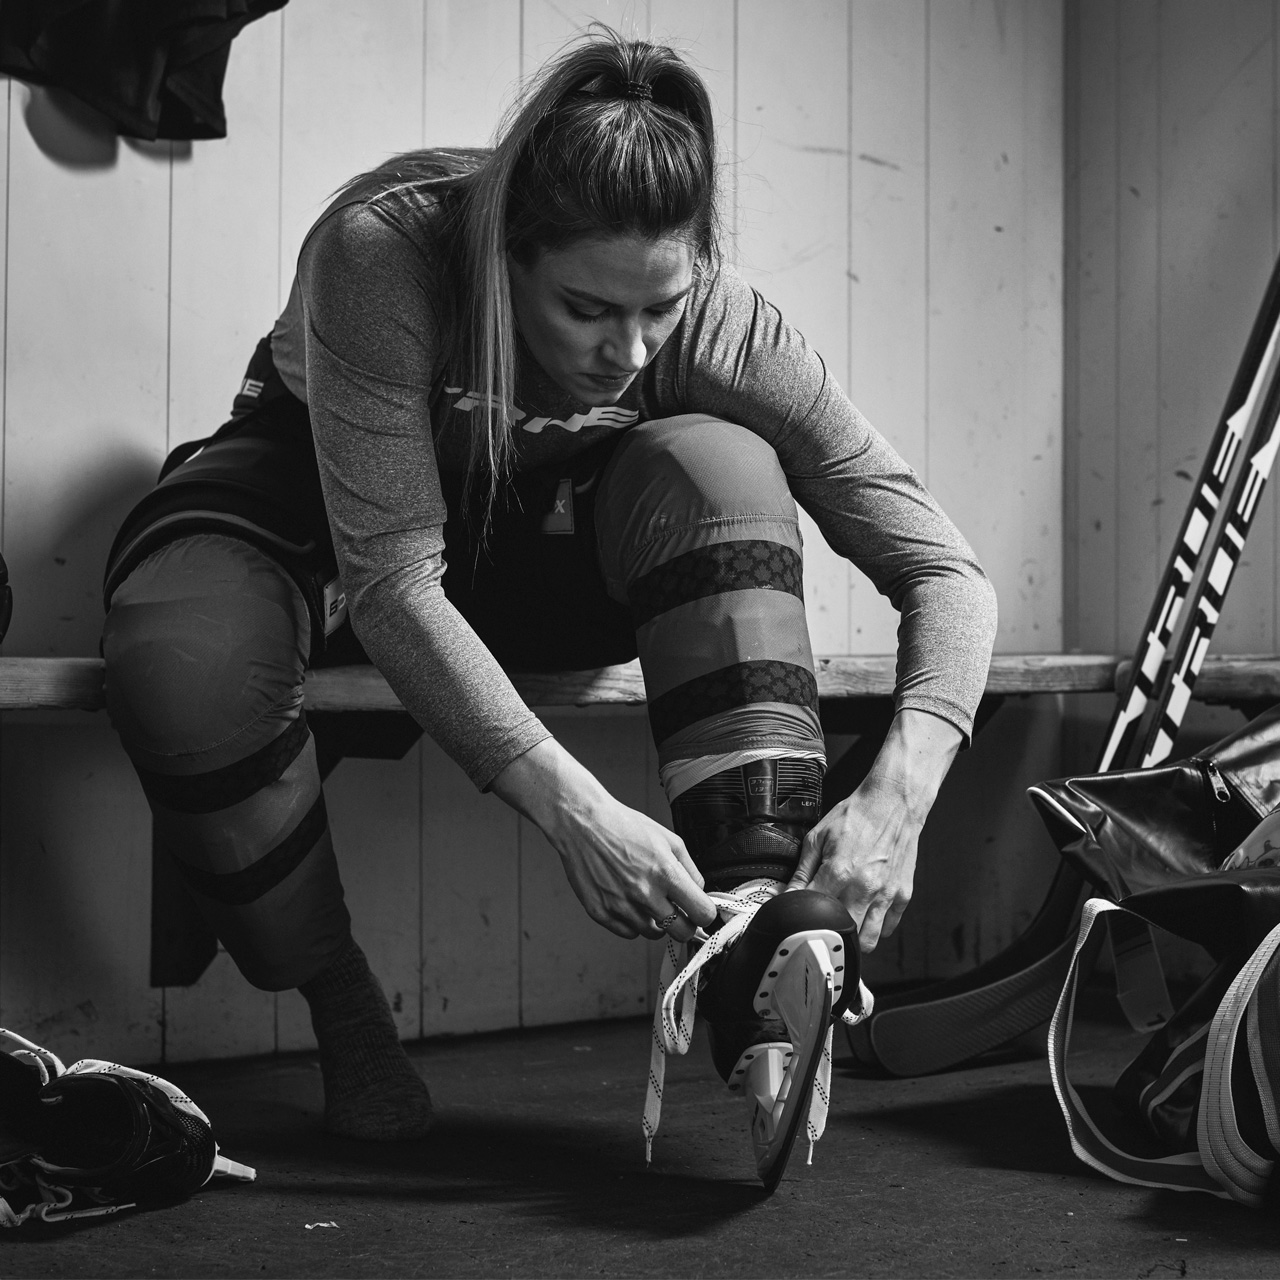 Natalie Spooner tieing skate laces in a locker room